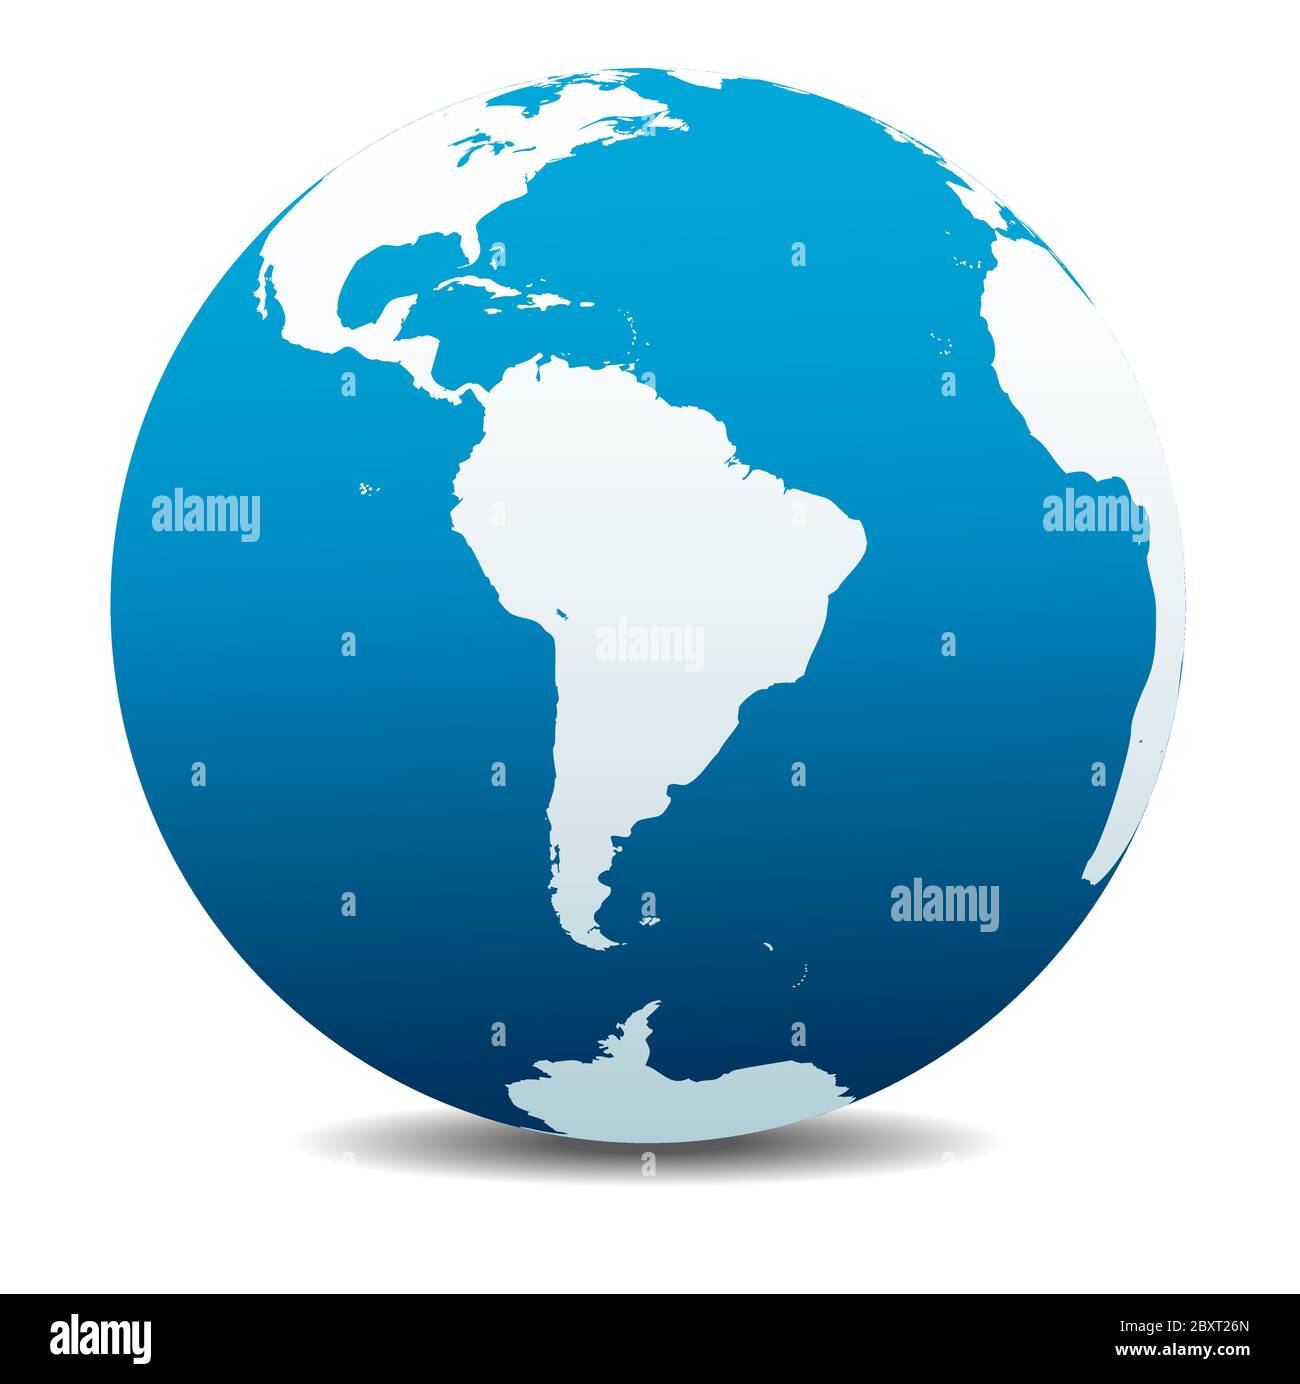 Amérique du Sud, Amérique latine, icône carte vectorielle du globe terrestre, Terre. Tous les éléments sont sur des couches individuelles dans le fichier vectoriel pour une utilisation facile. Illustration de Vecteur